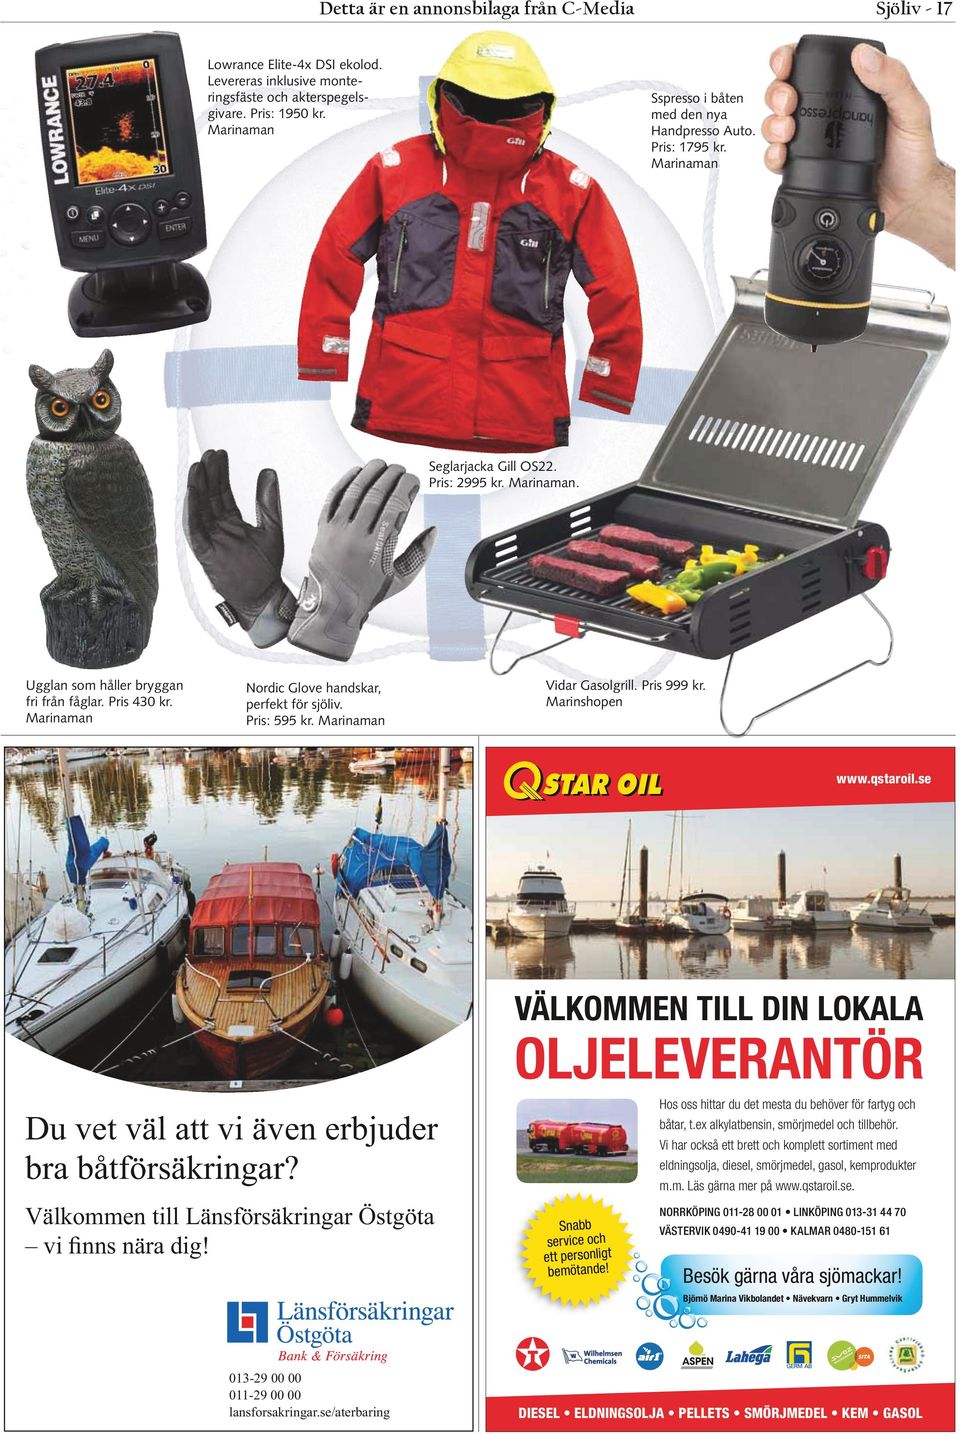 Marinaman Nordic Glove handskar, perfekt för sjöliv. Pris: 595 kr. Marinaman Vidar Gasolgrill. Pris 999 kr. Marinshopen www.qstaroil.